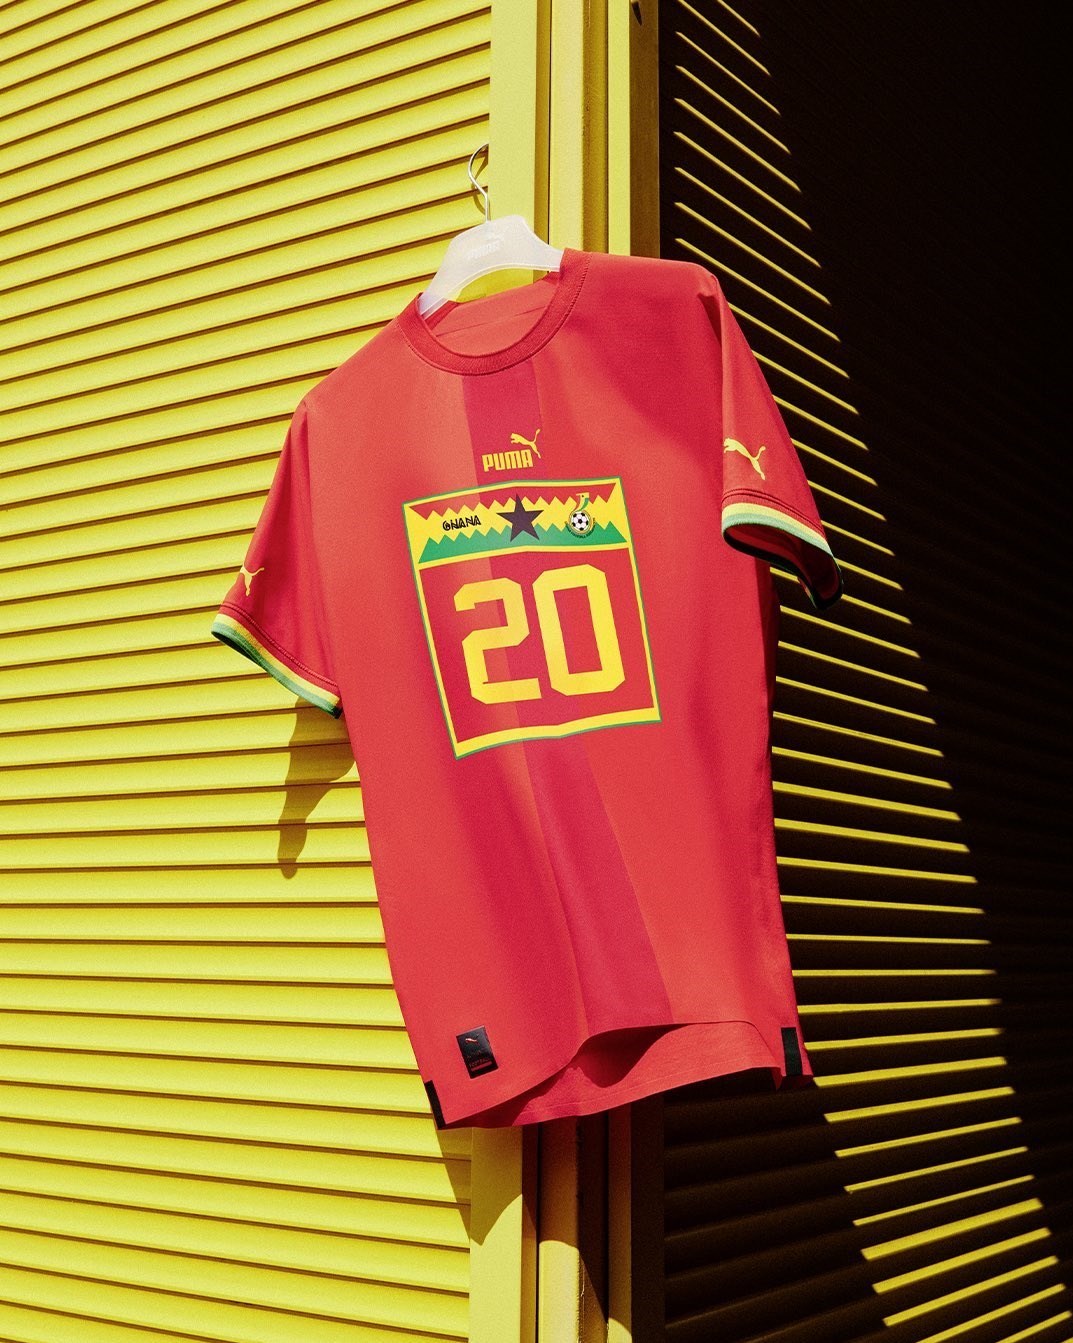 14010607163848667259881910 - رونمایی پوما از پیراهن 6 تیم راه یافته به جام جهانی 2022 + عکس